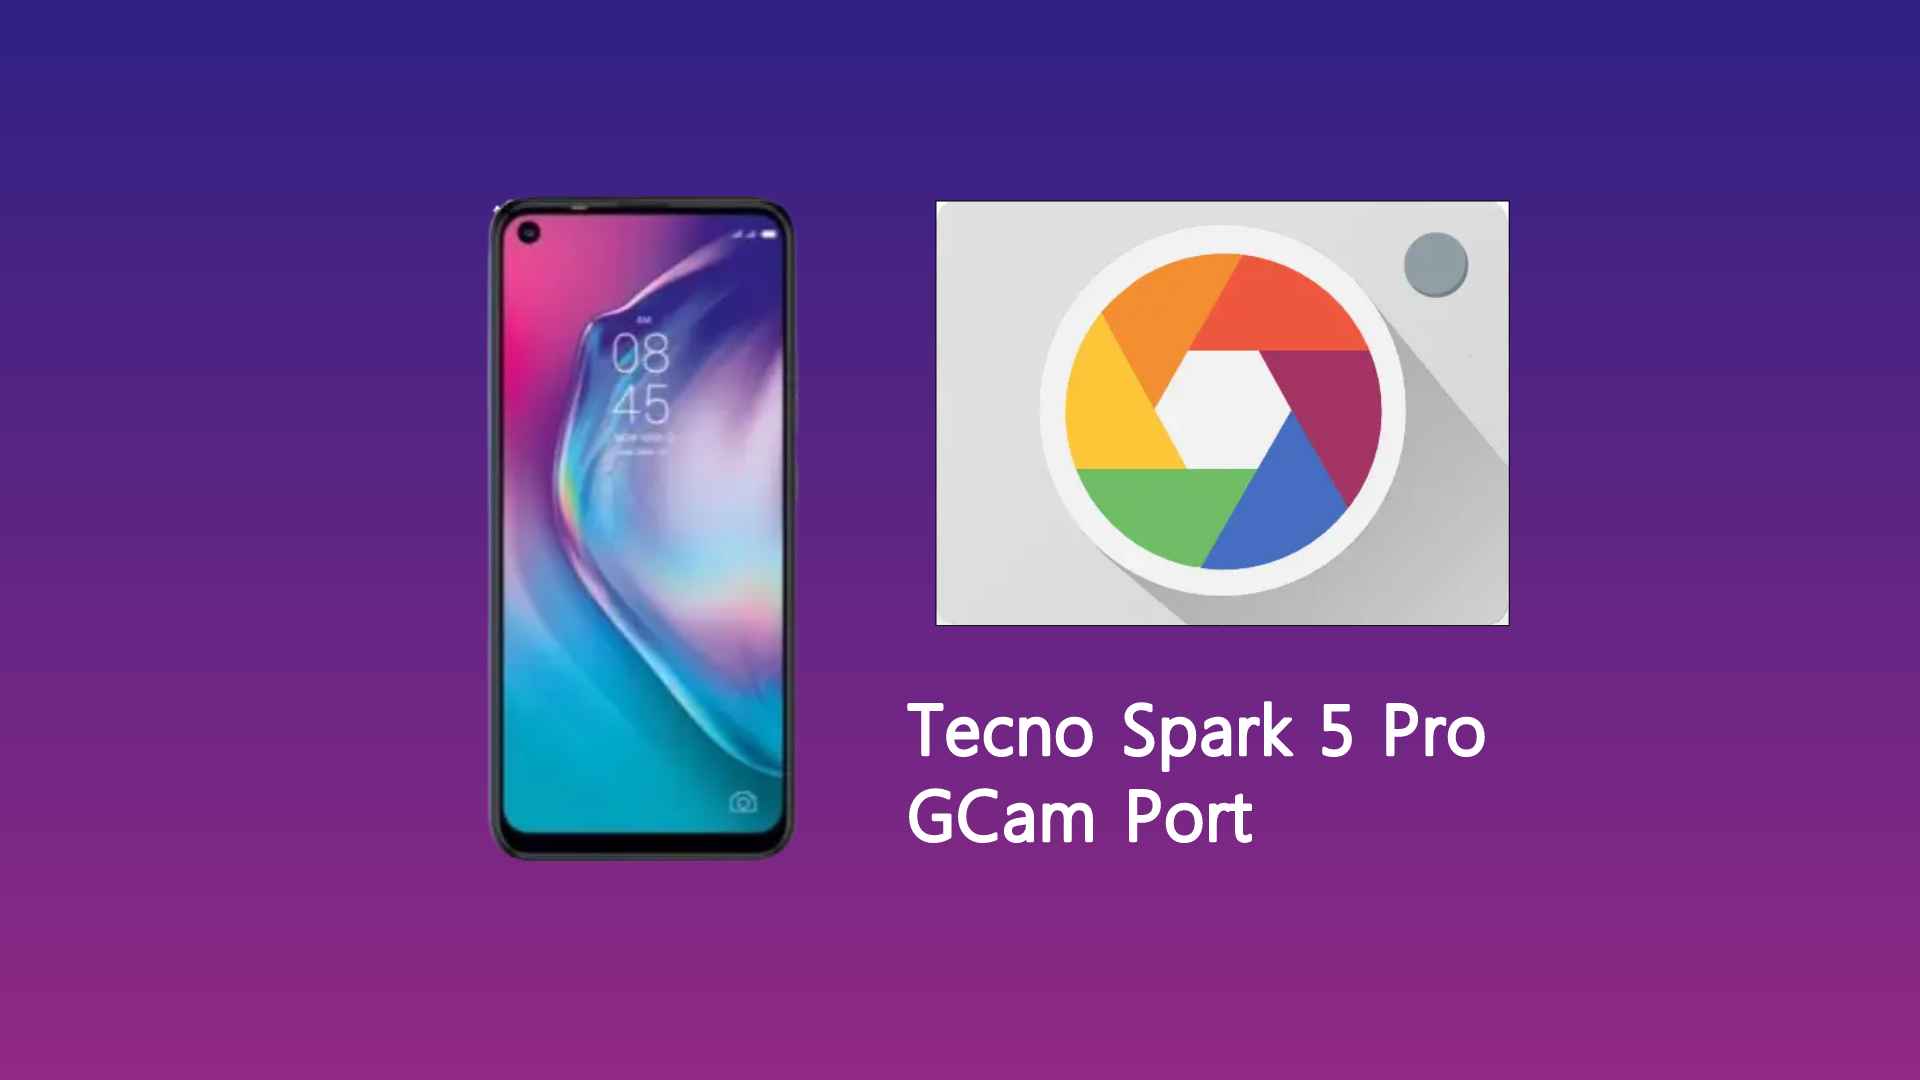 Tecno Spark 5 Pro GCam Port